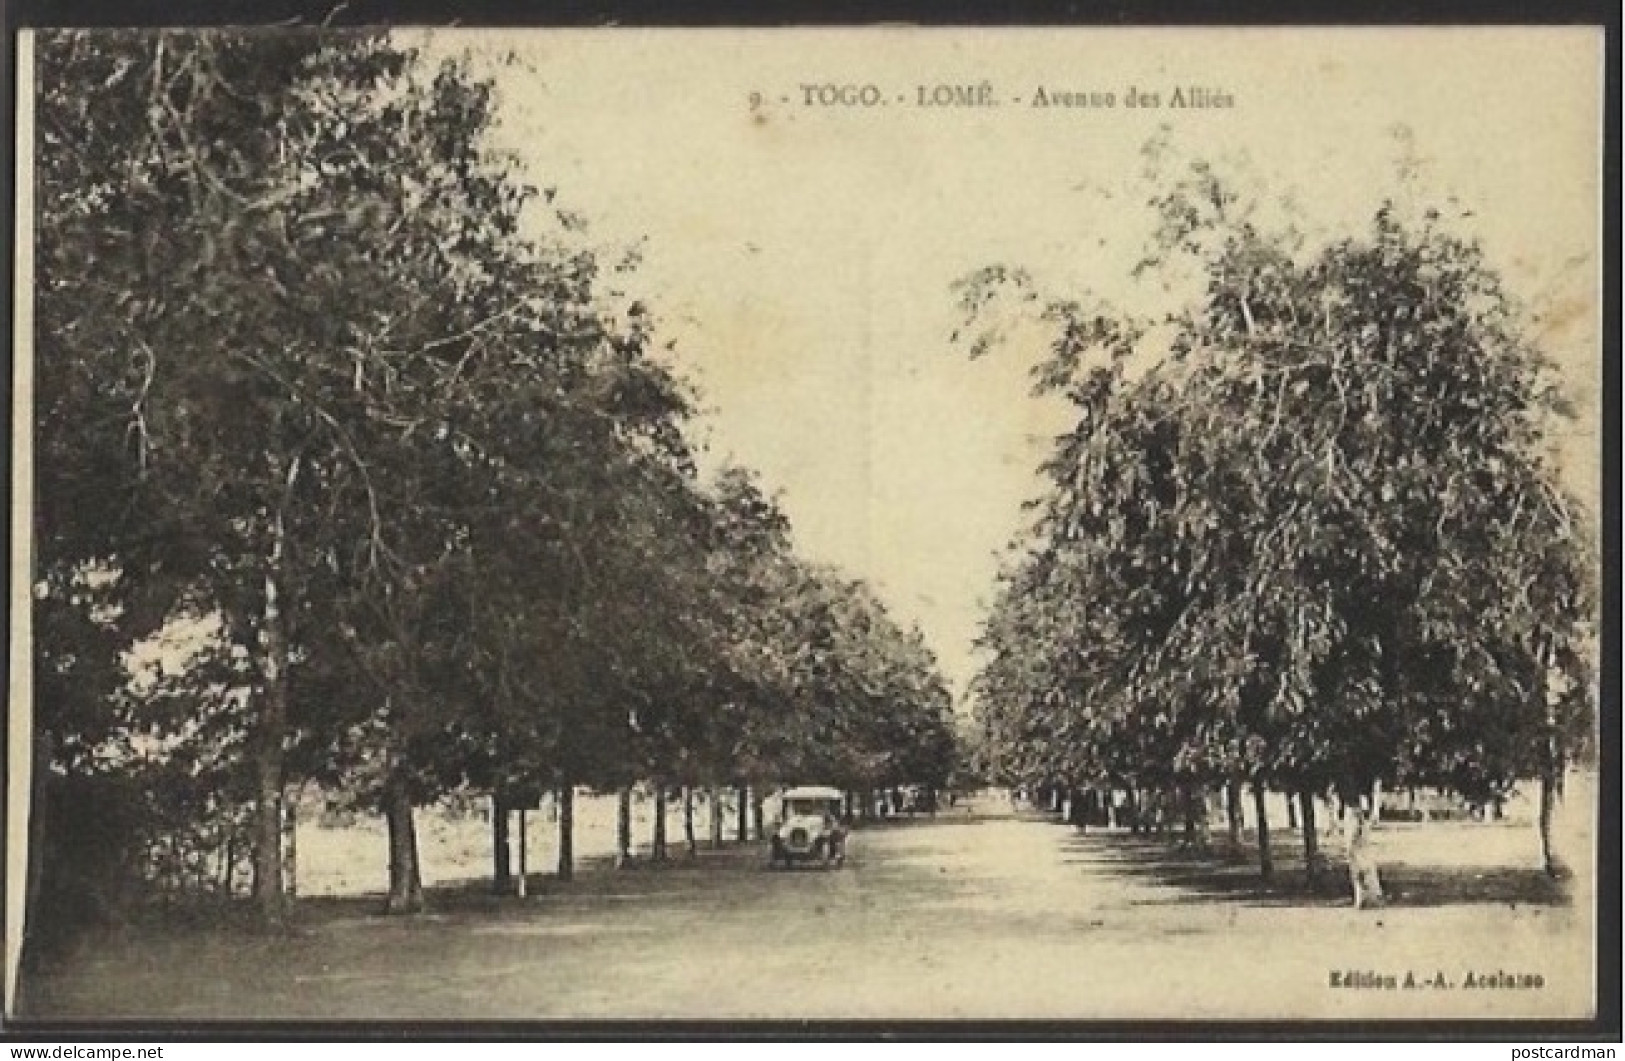 TOGO - Lomé - Avenue Des Alliés. Published By A. Accolatse - 9 - Togo